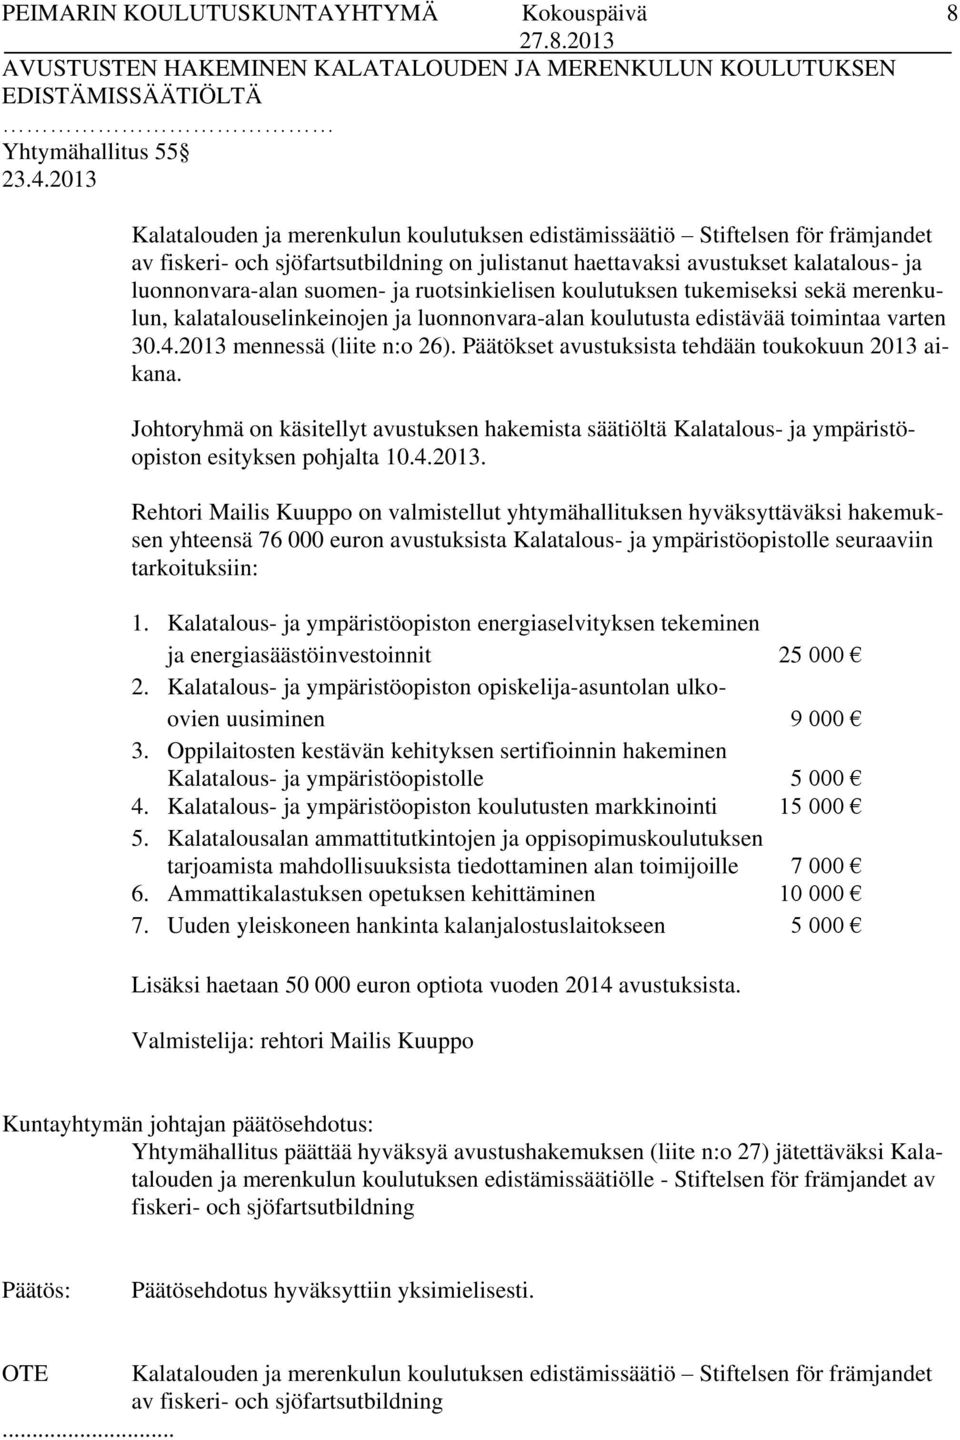 ja ruotsinkielisen koulutuksen tukemiseksi sekä merenkulun, kalatalouselinkeinojen ja luonnonvara-alan koulutusta edistävää toimintaa varten 30.4.2013 mennessä (liite n:o 26).